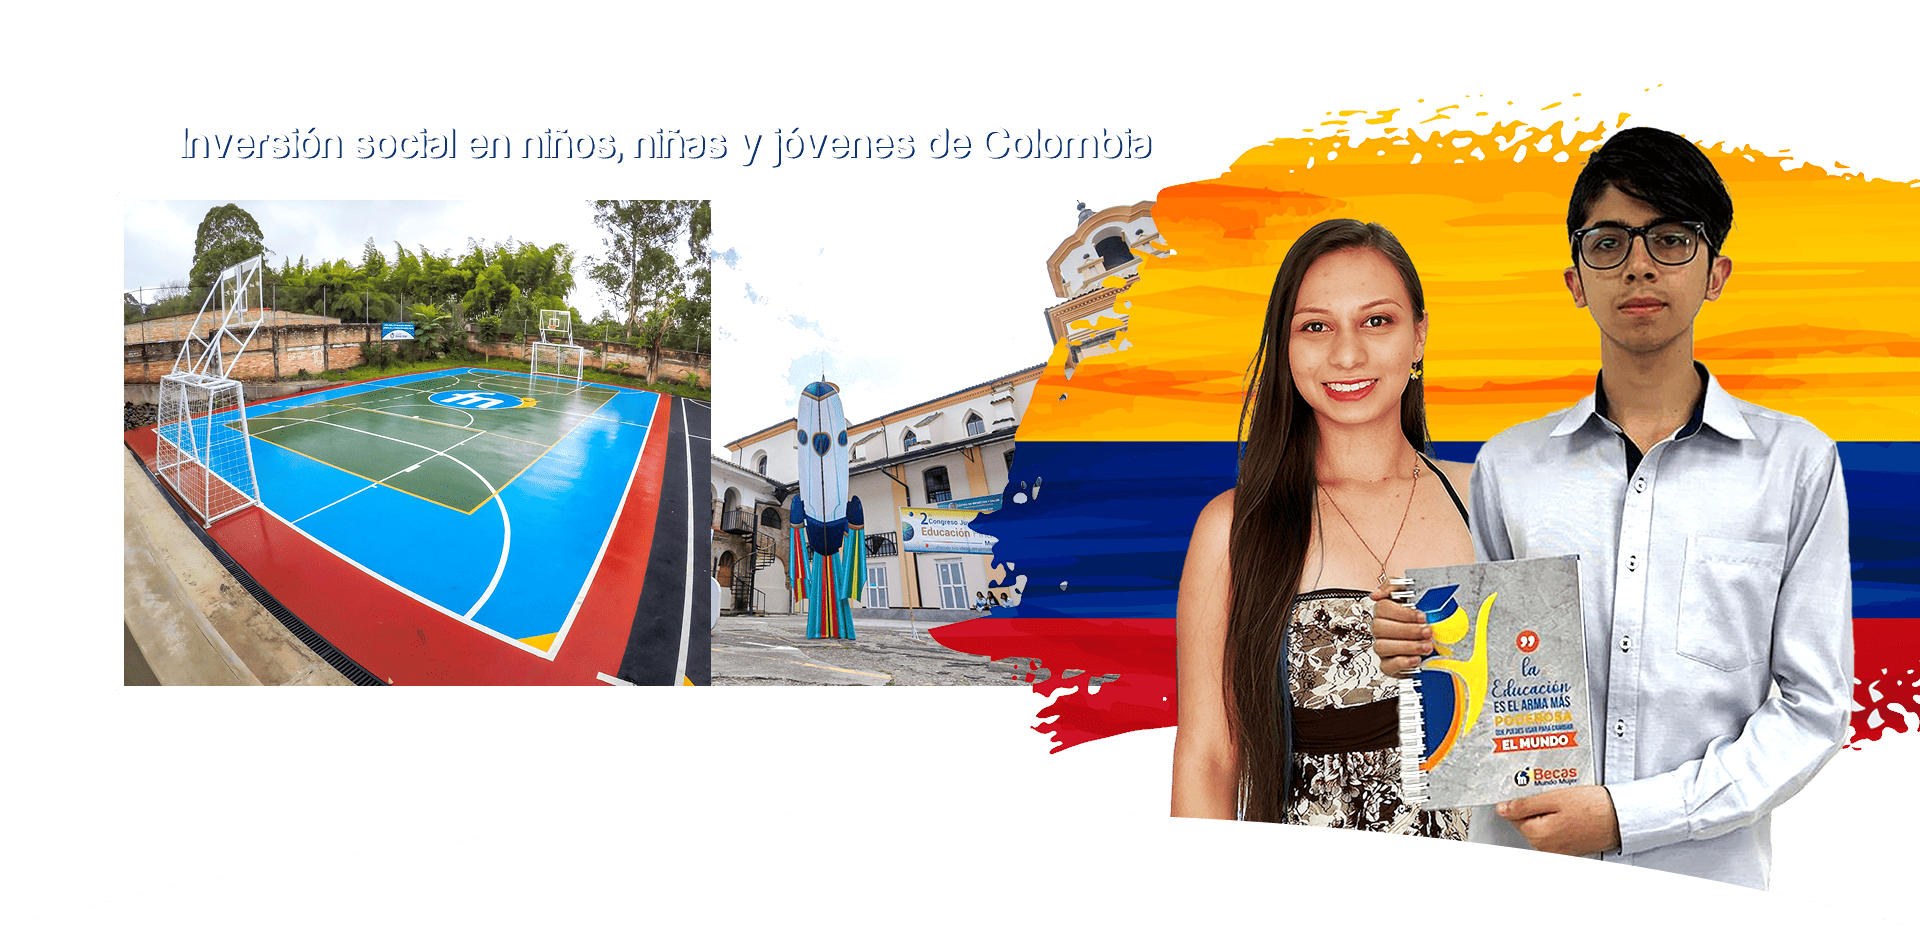 Inversión social en niños, niñas y jóvenes de Colombia